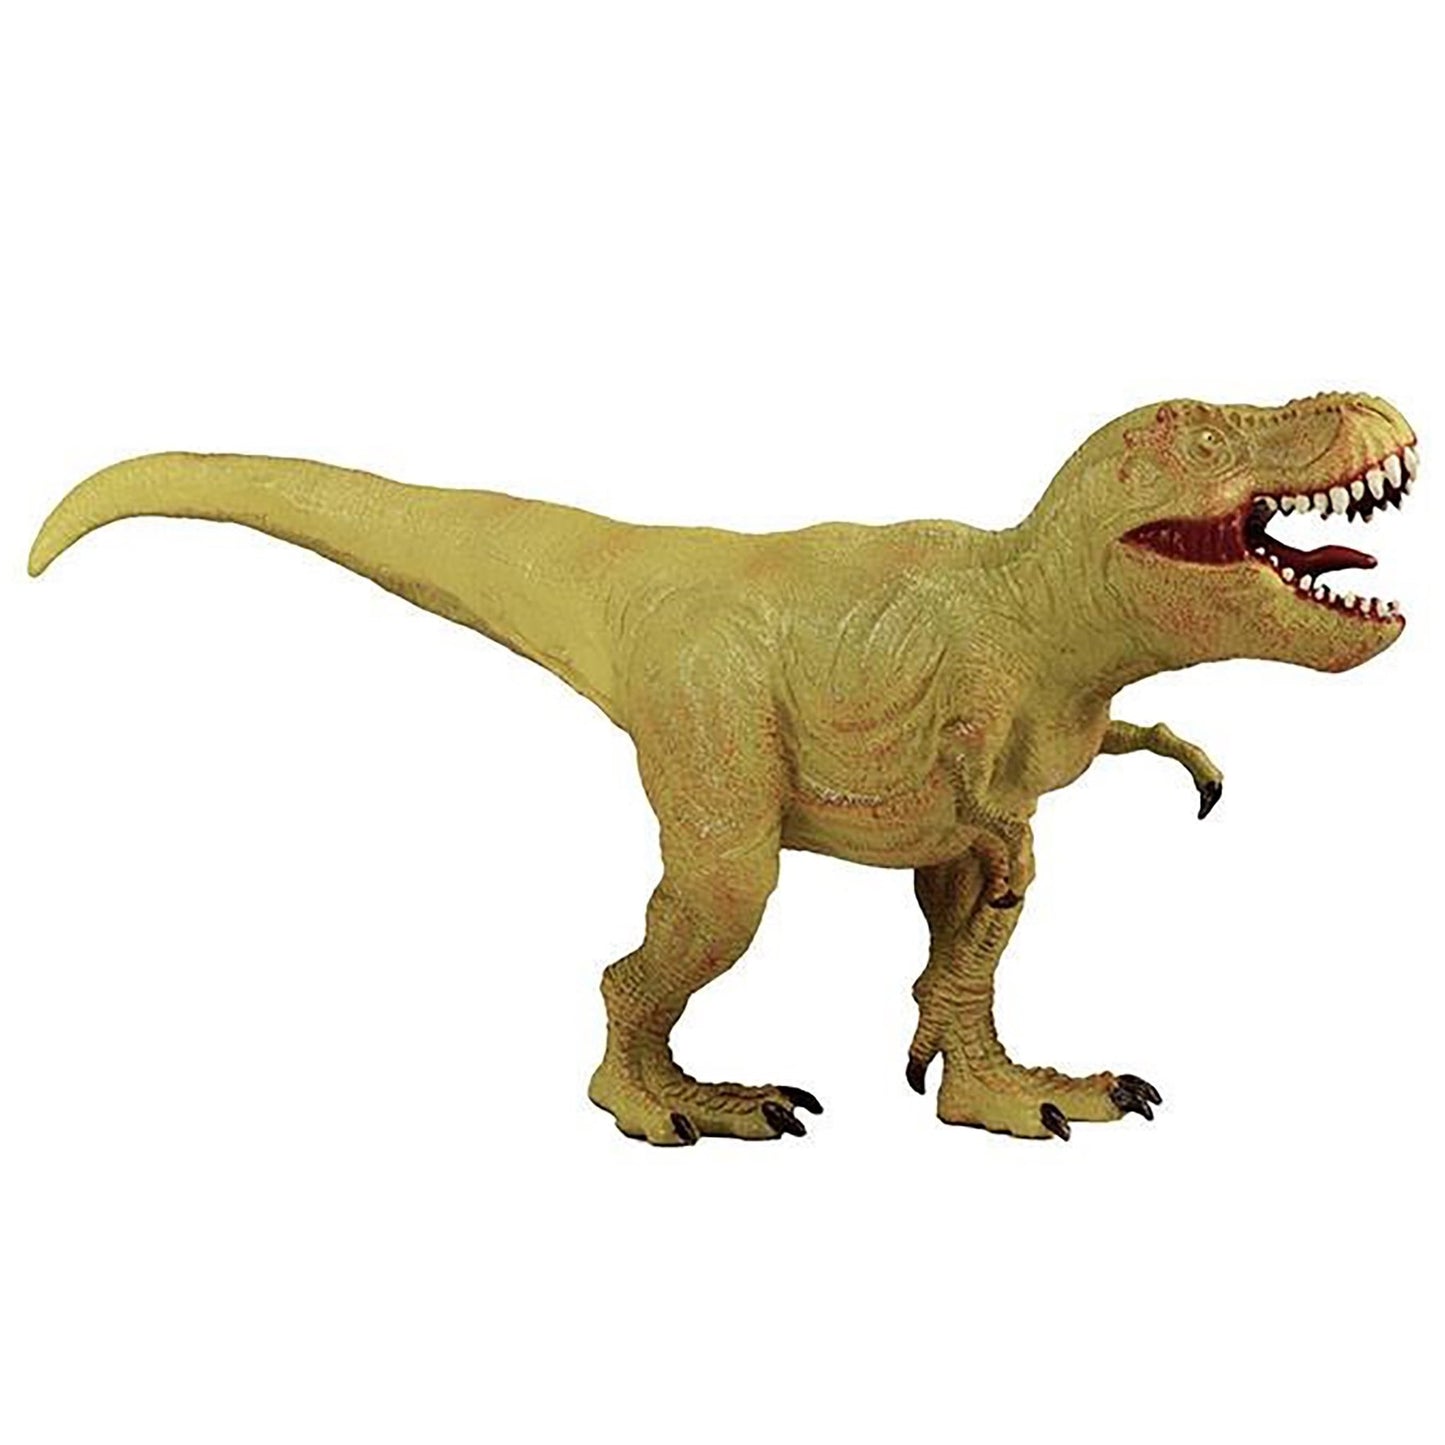 Tyrannosaurus 13" Dinosaur figure